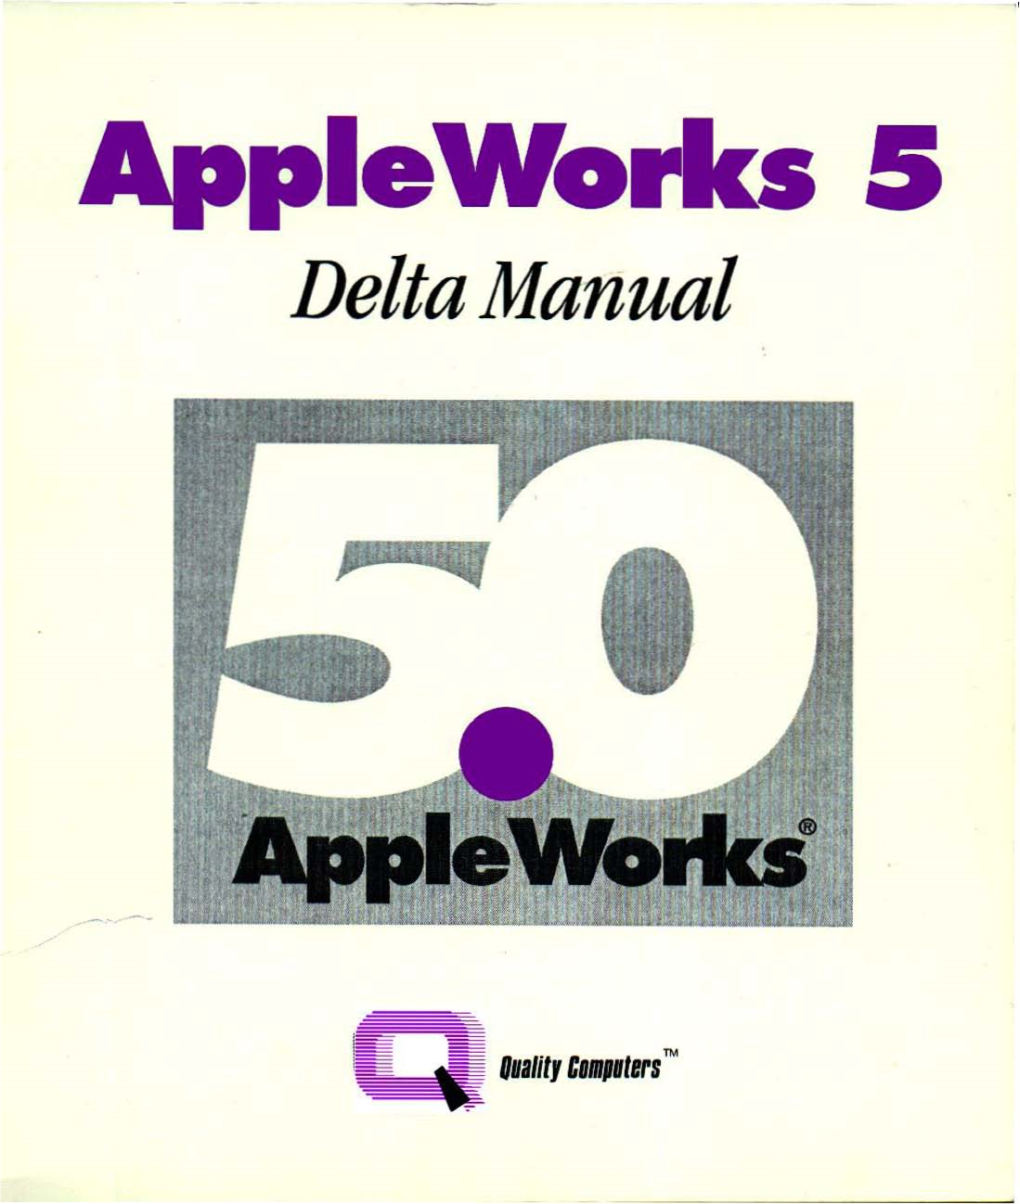 Appleworks 5 Delta Manual Plus Index and Update